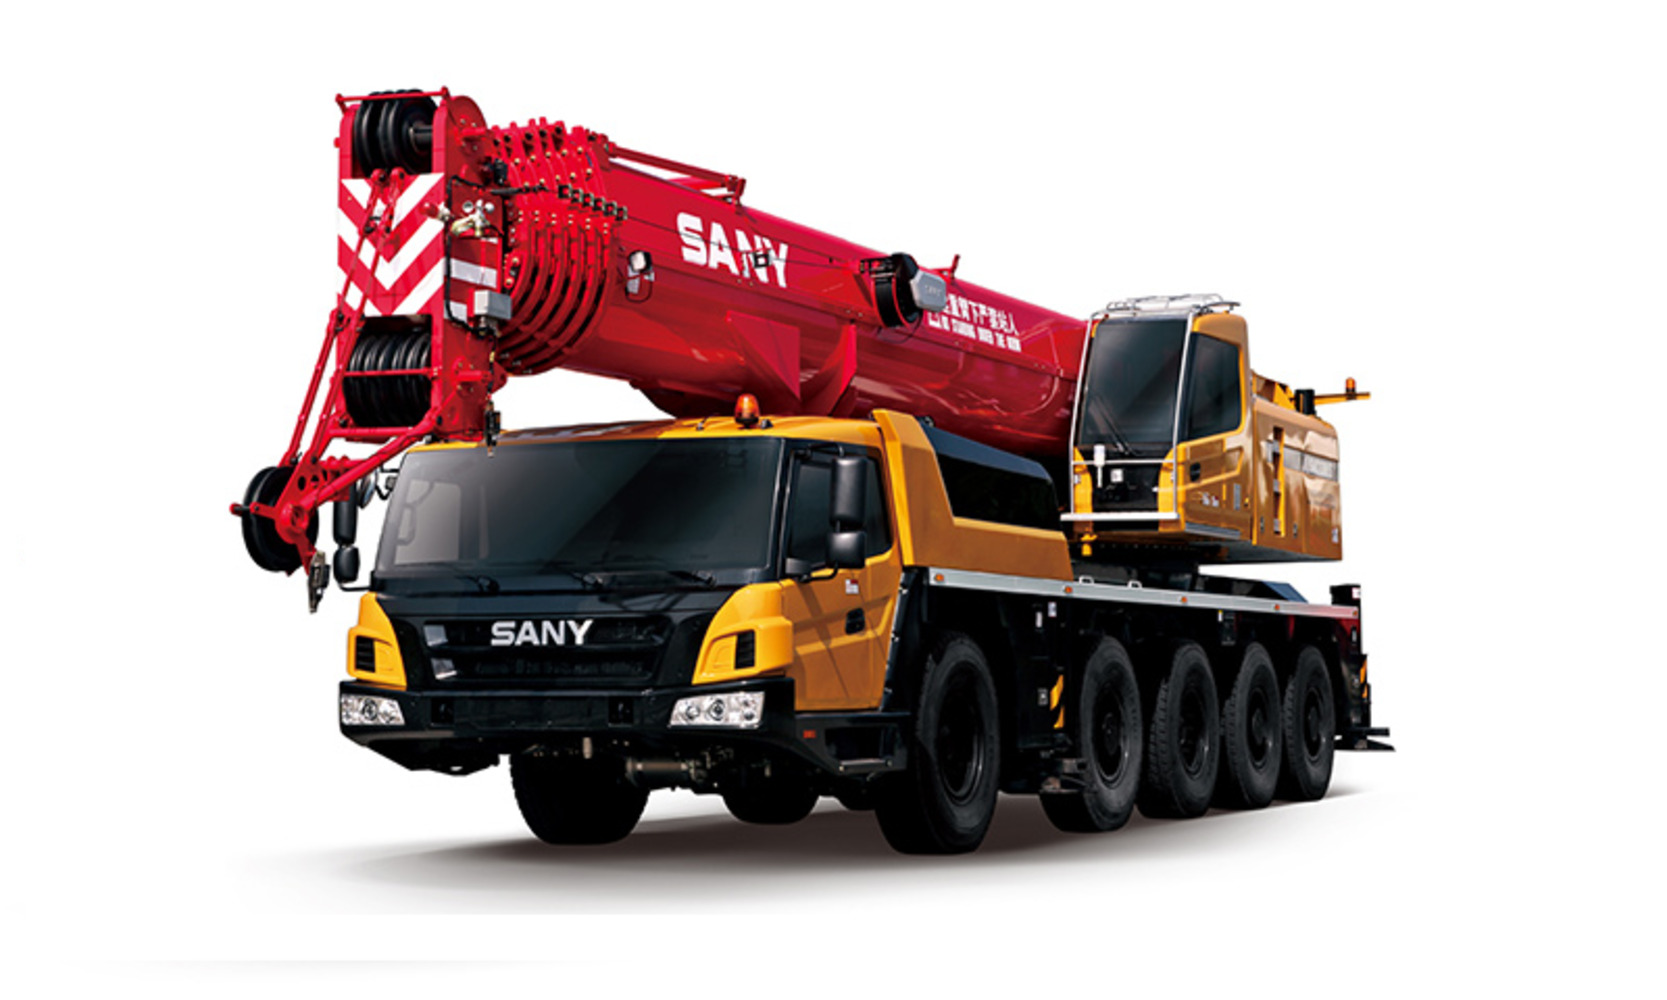 Автокран Palfinger Sany SAC1300S 130 тонн, 63 метра вездеход